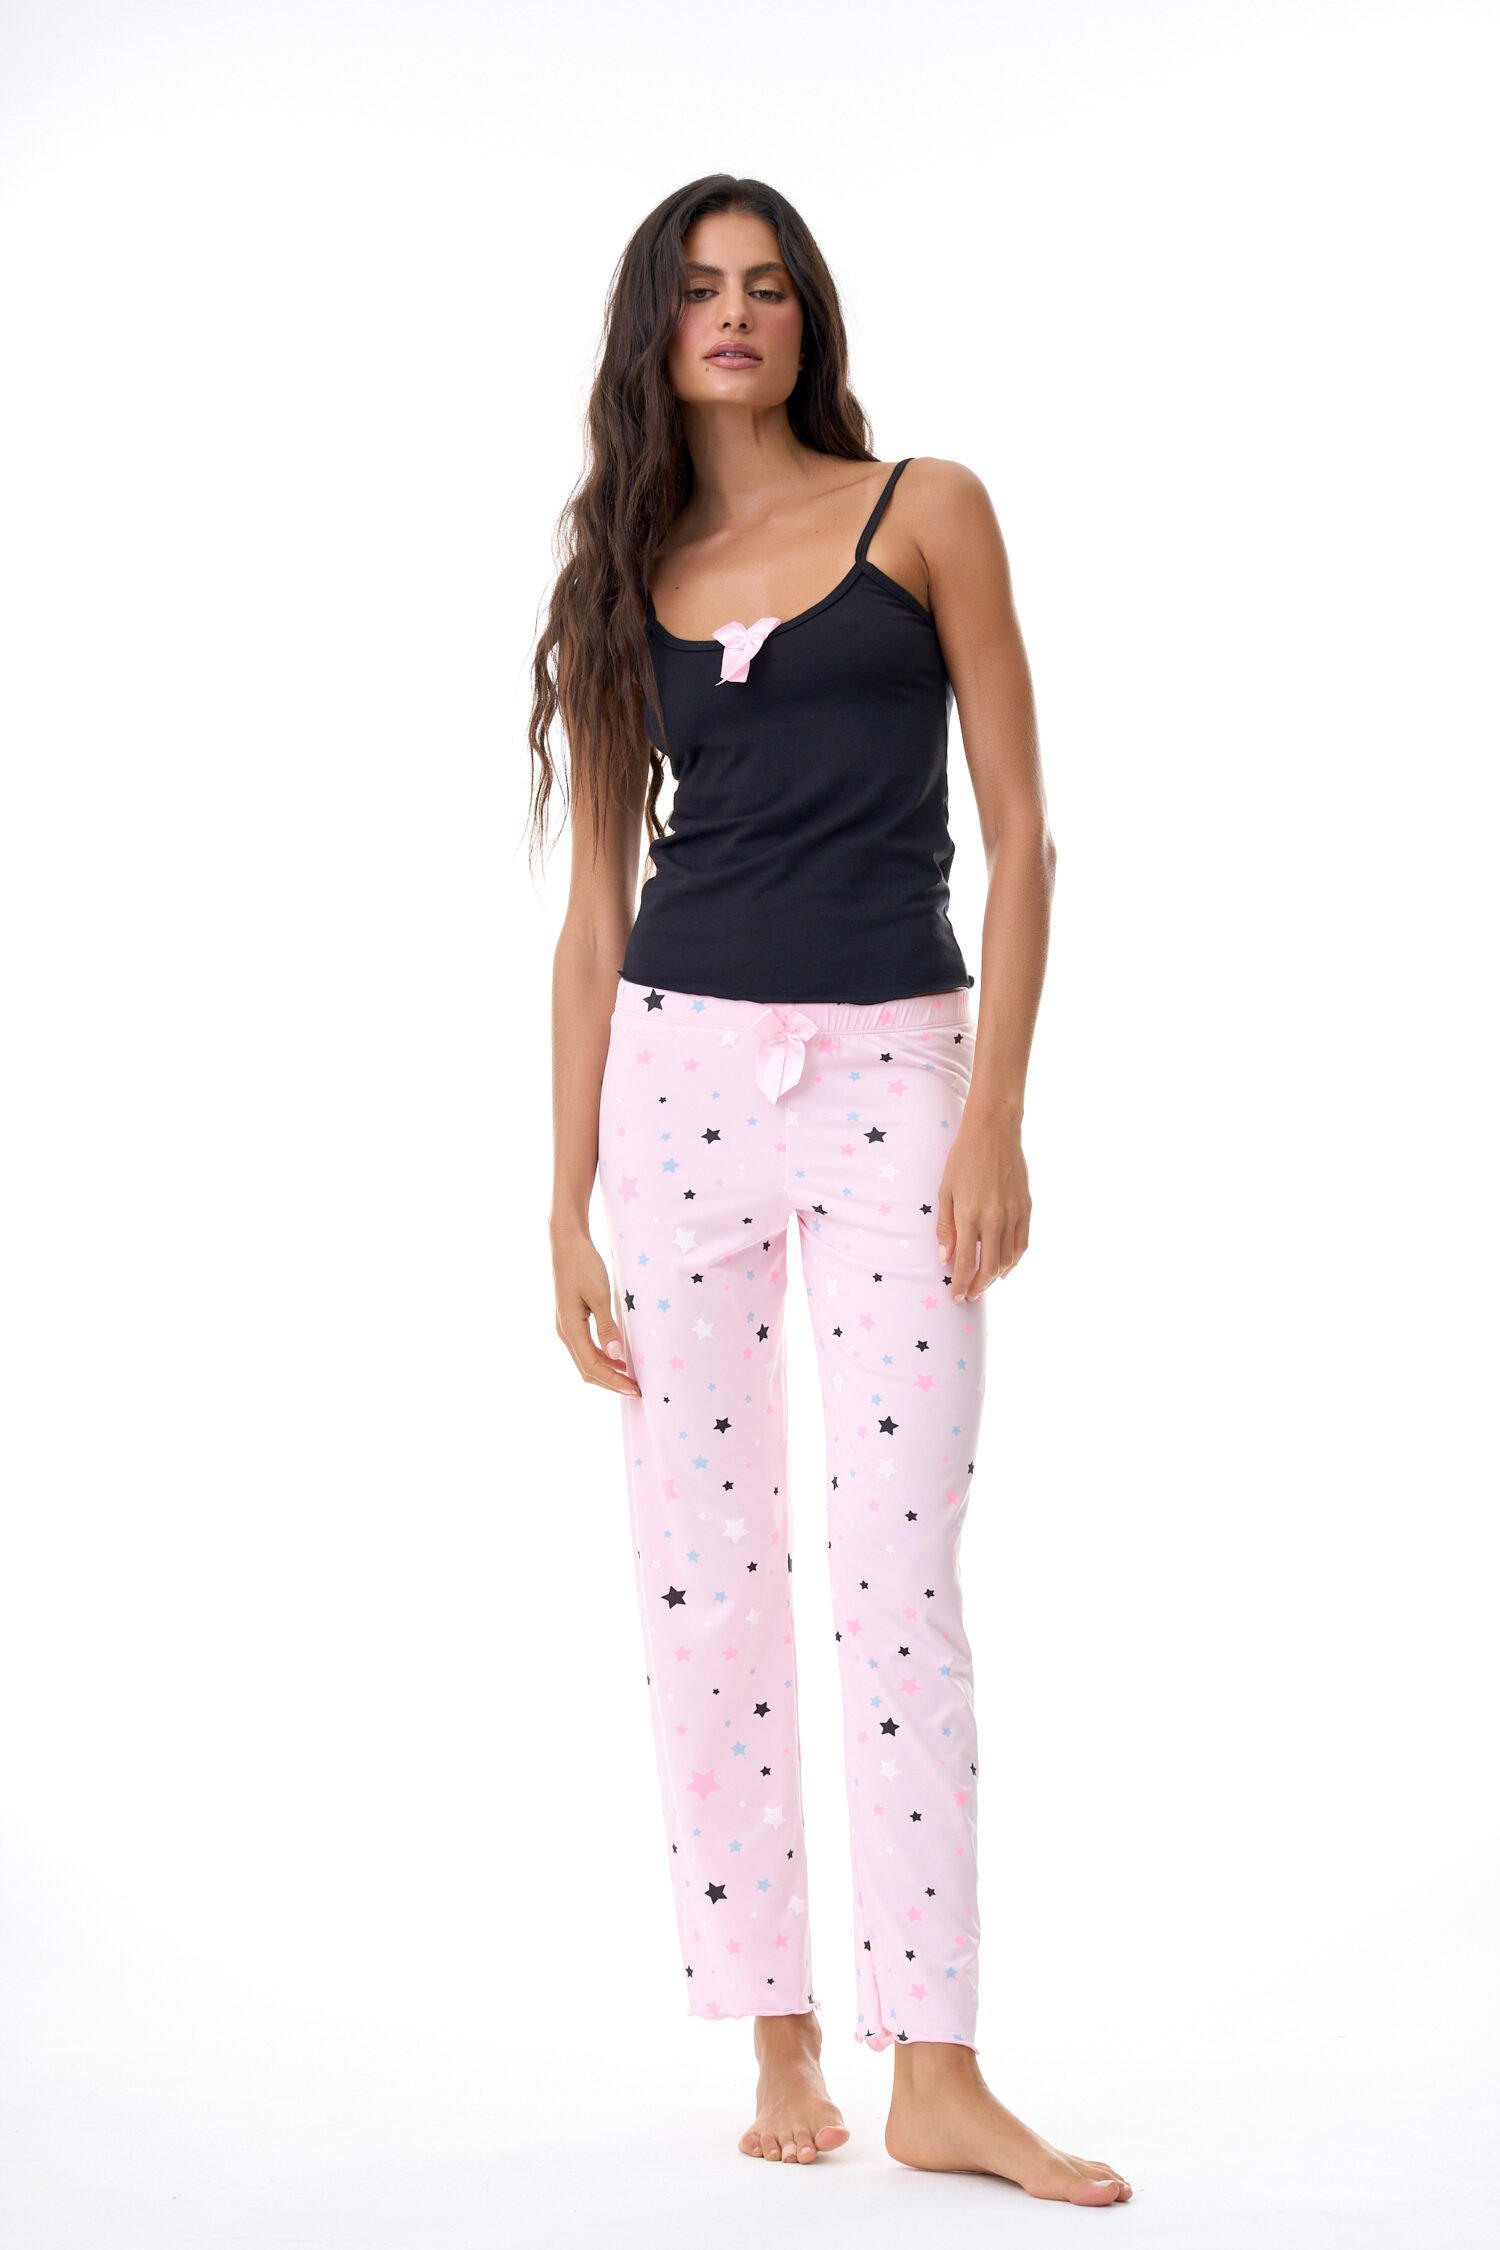 Imagen del producto: Conjunto pantalón rosada claro estrellas blusa negra